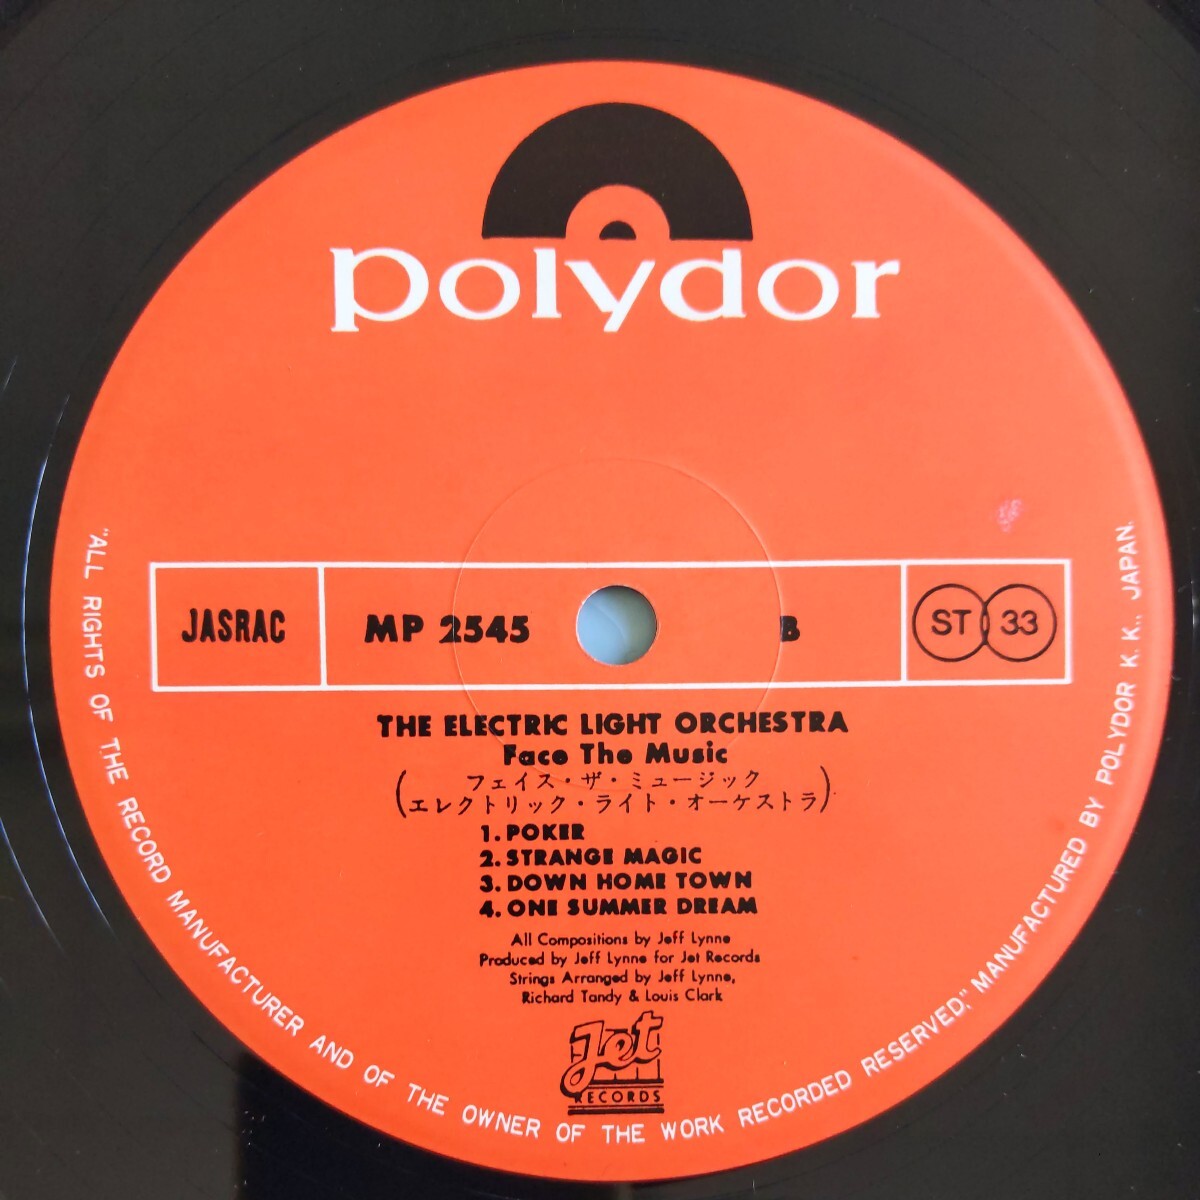 【帯付/試聴済LP】ELO『Face The Music』1976年初回盤MP2545★ジェフ・リン★エレクトリック・ライト・オーケストラ★ムーヴ_画像8